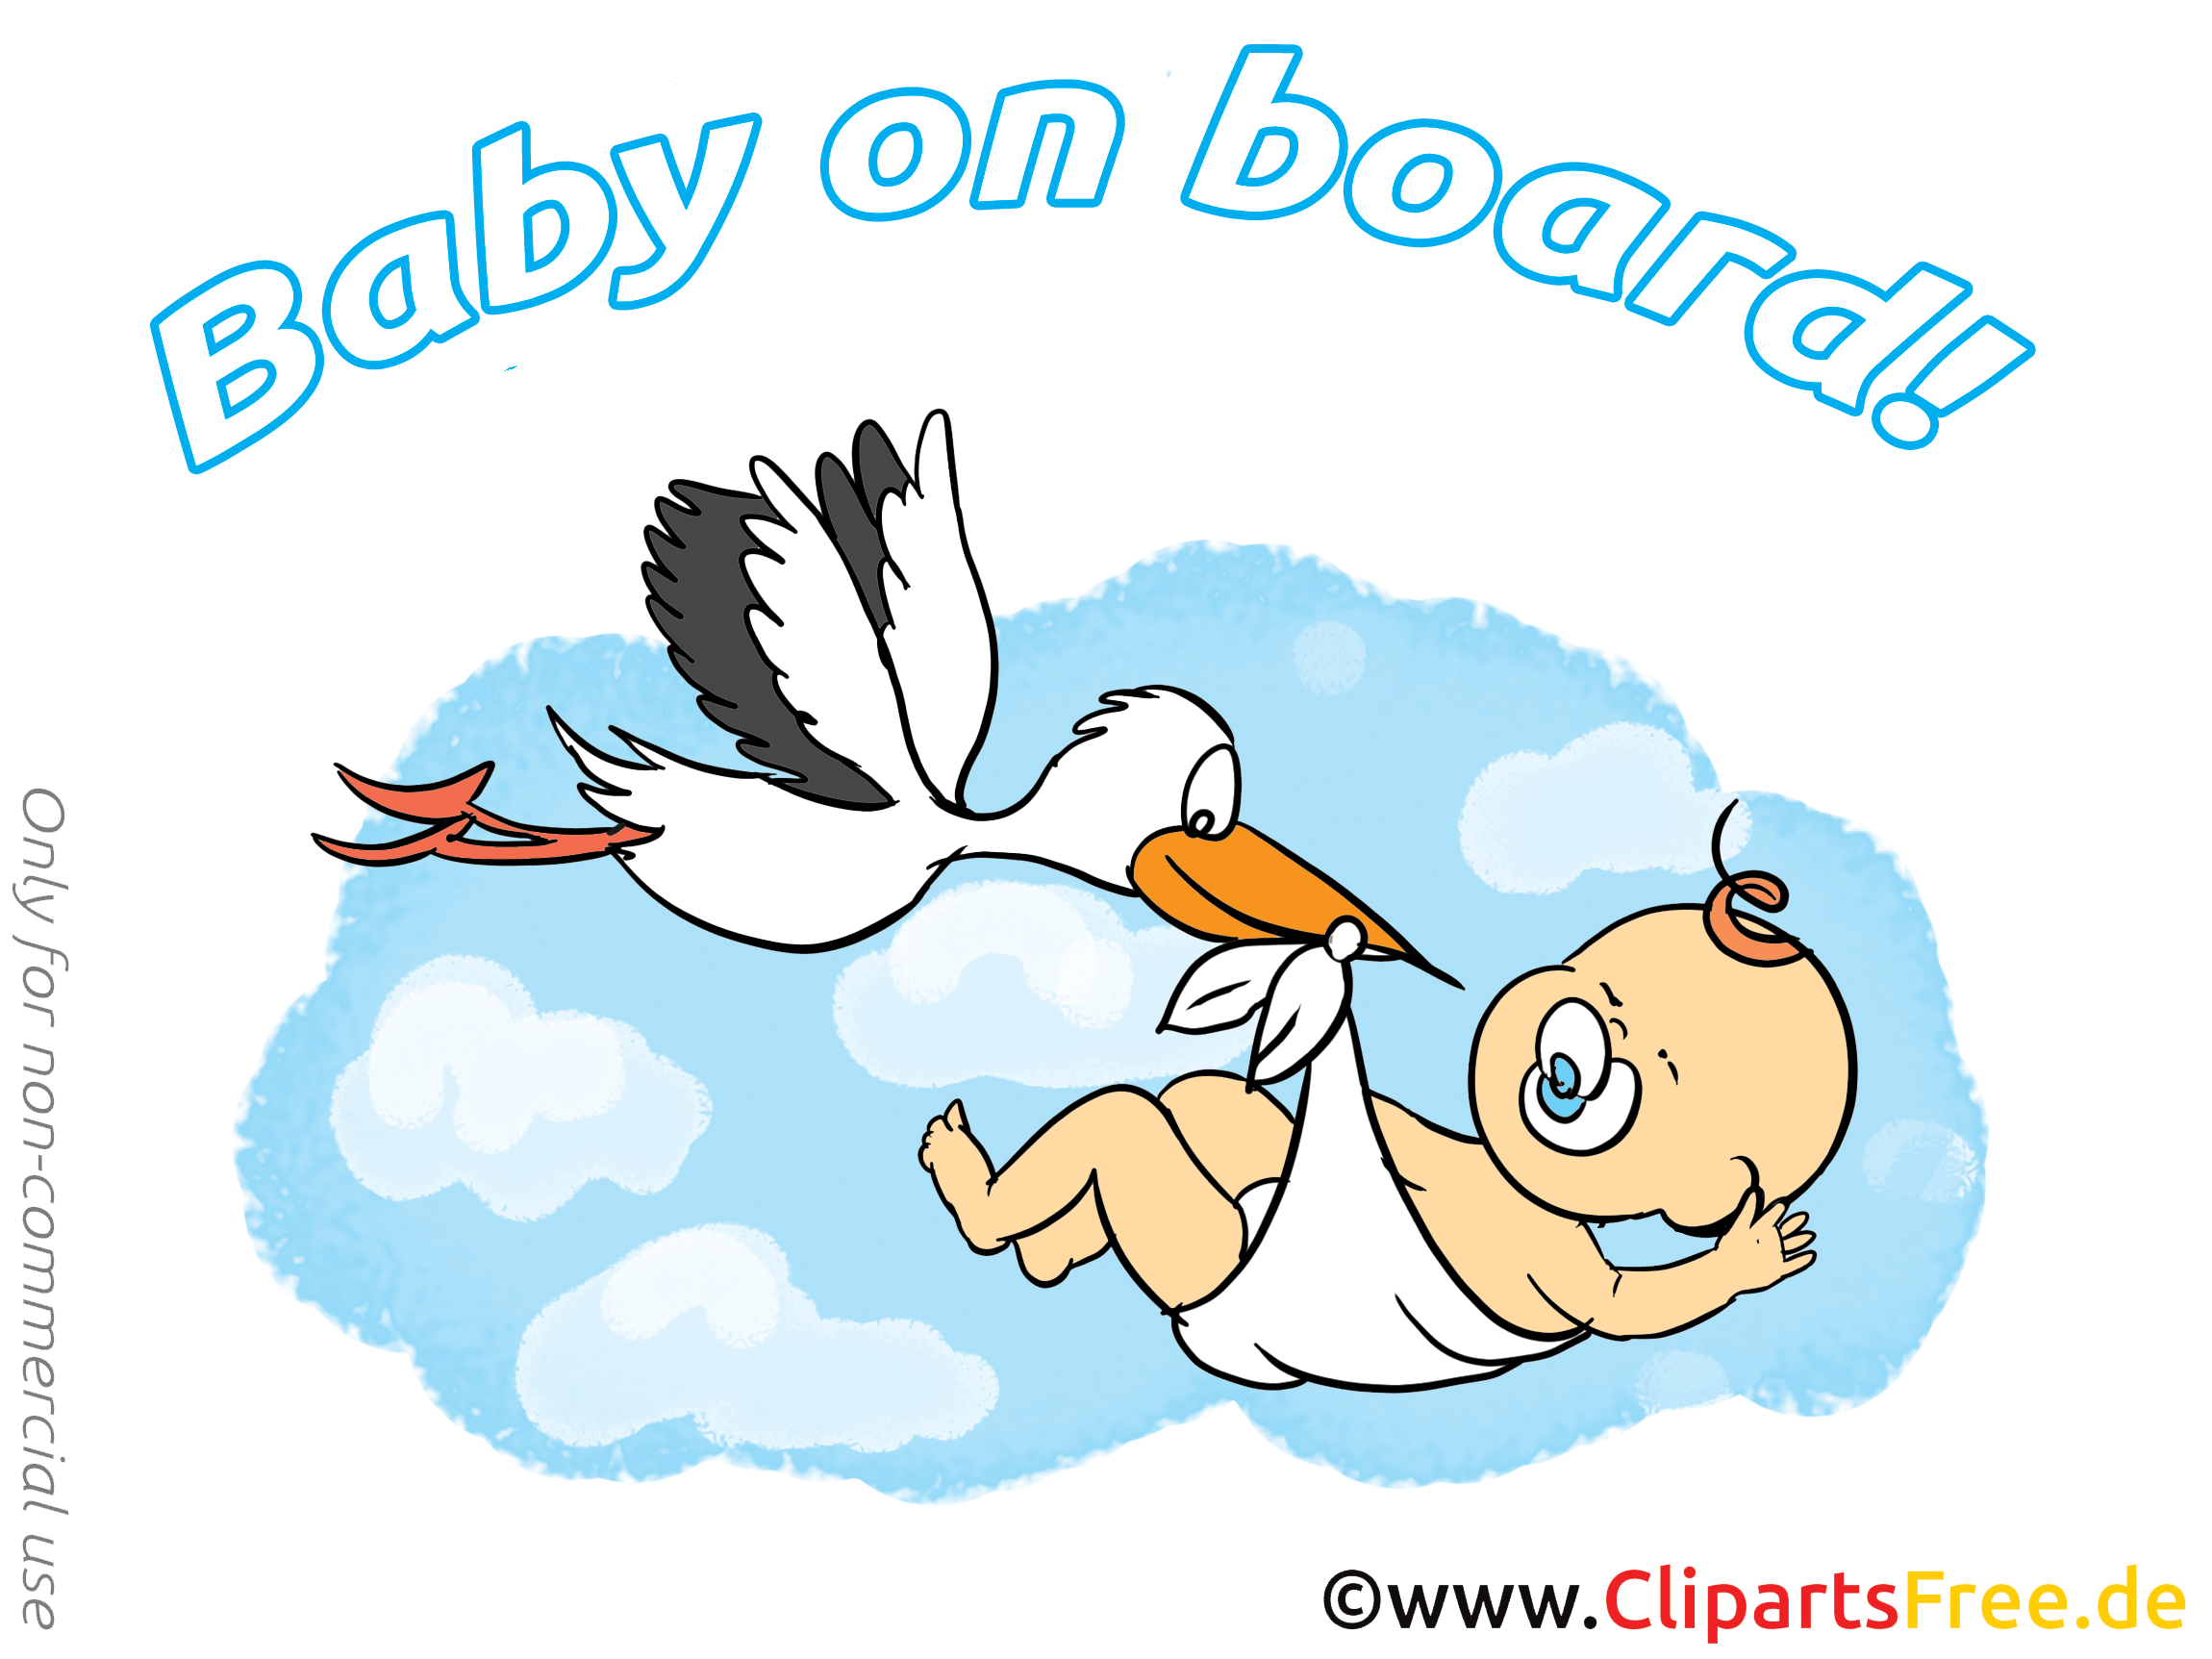 Cygogne dessin à télécharger – Bébé à bord images